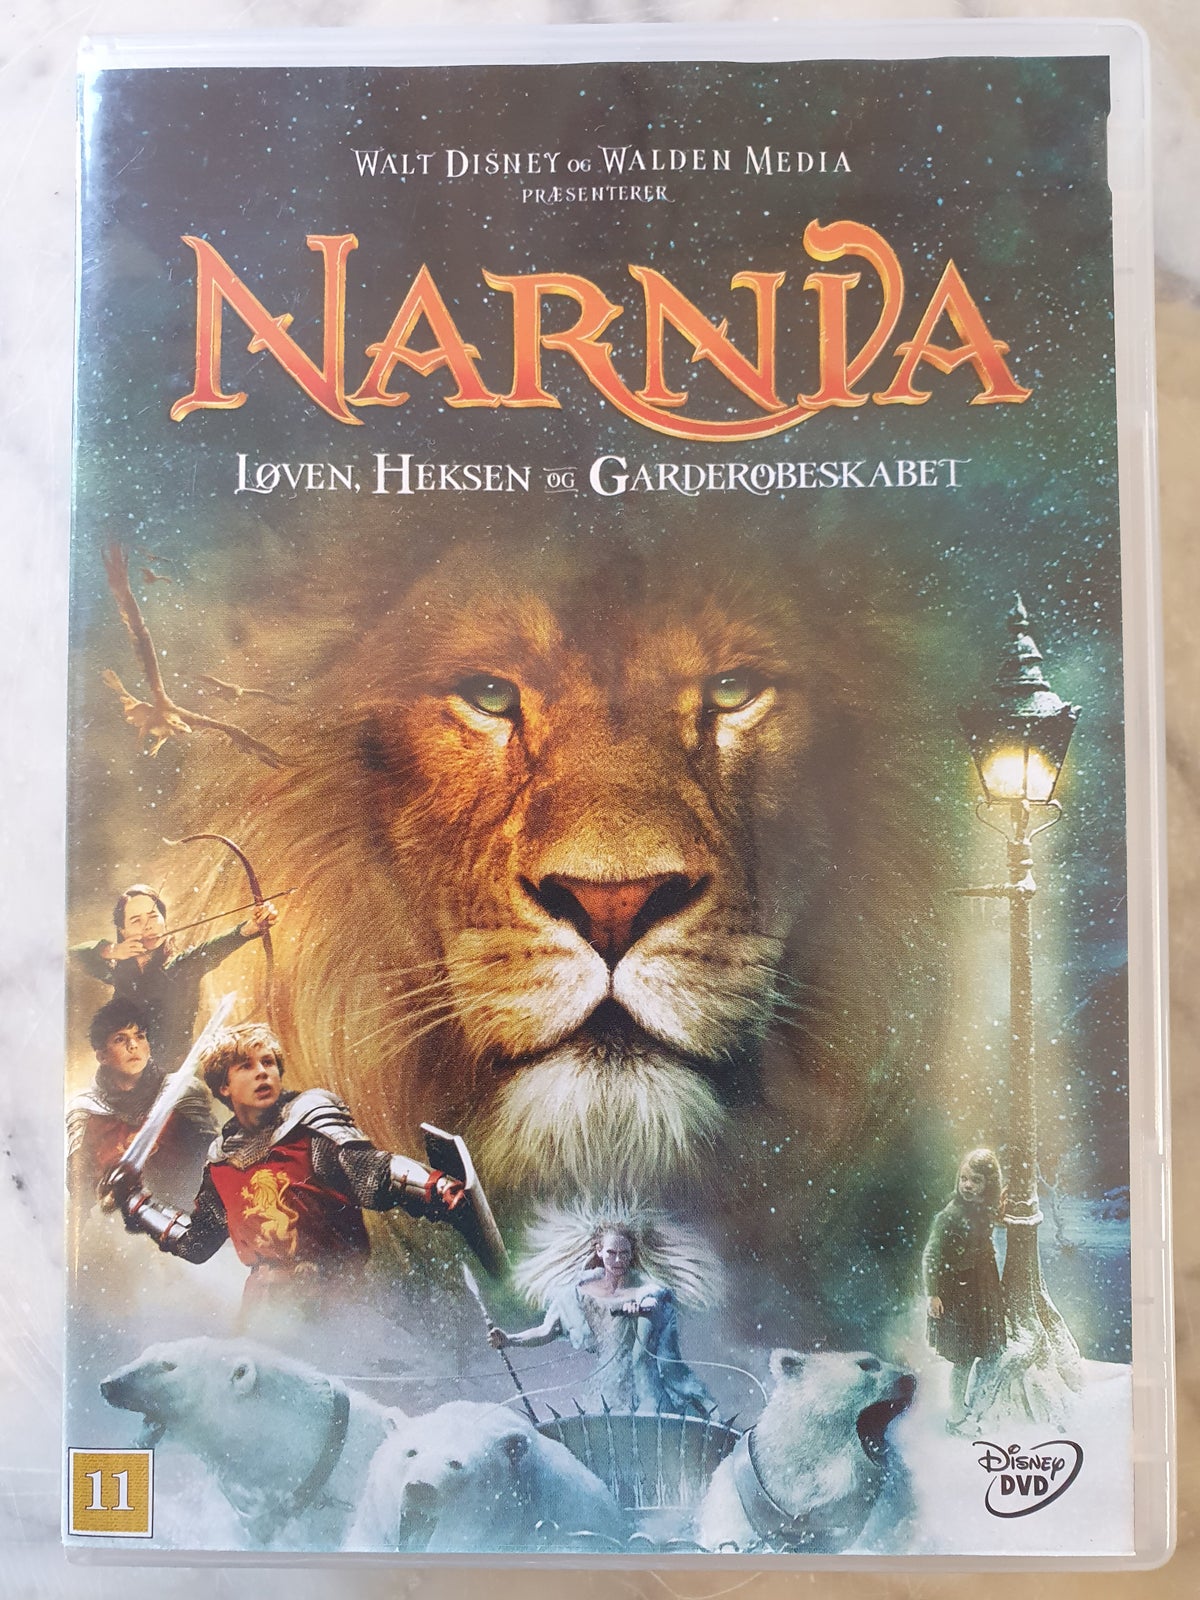 Narnia Løven, heksen og instruktør Walt Disney og Walden Media – dba.dk Køb Salg af Nyt og Brugt